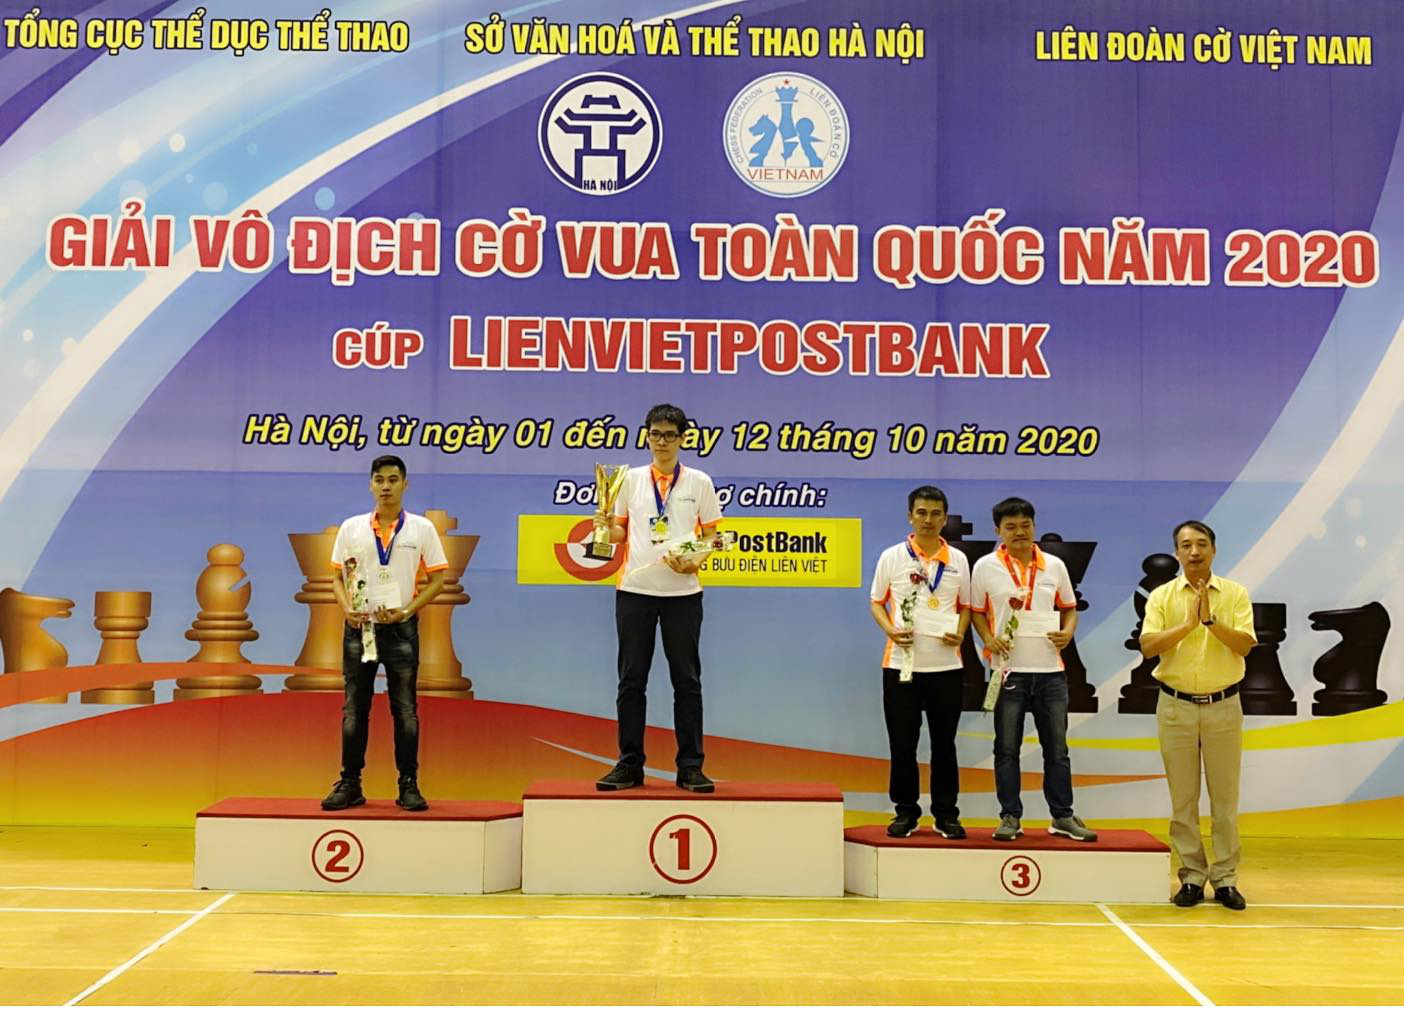 Kỳ thủ Lê Tuấn Minh lần đầu giành HCV cờ tiêu chuẩn giải VĐQG.